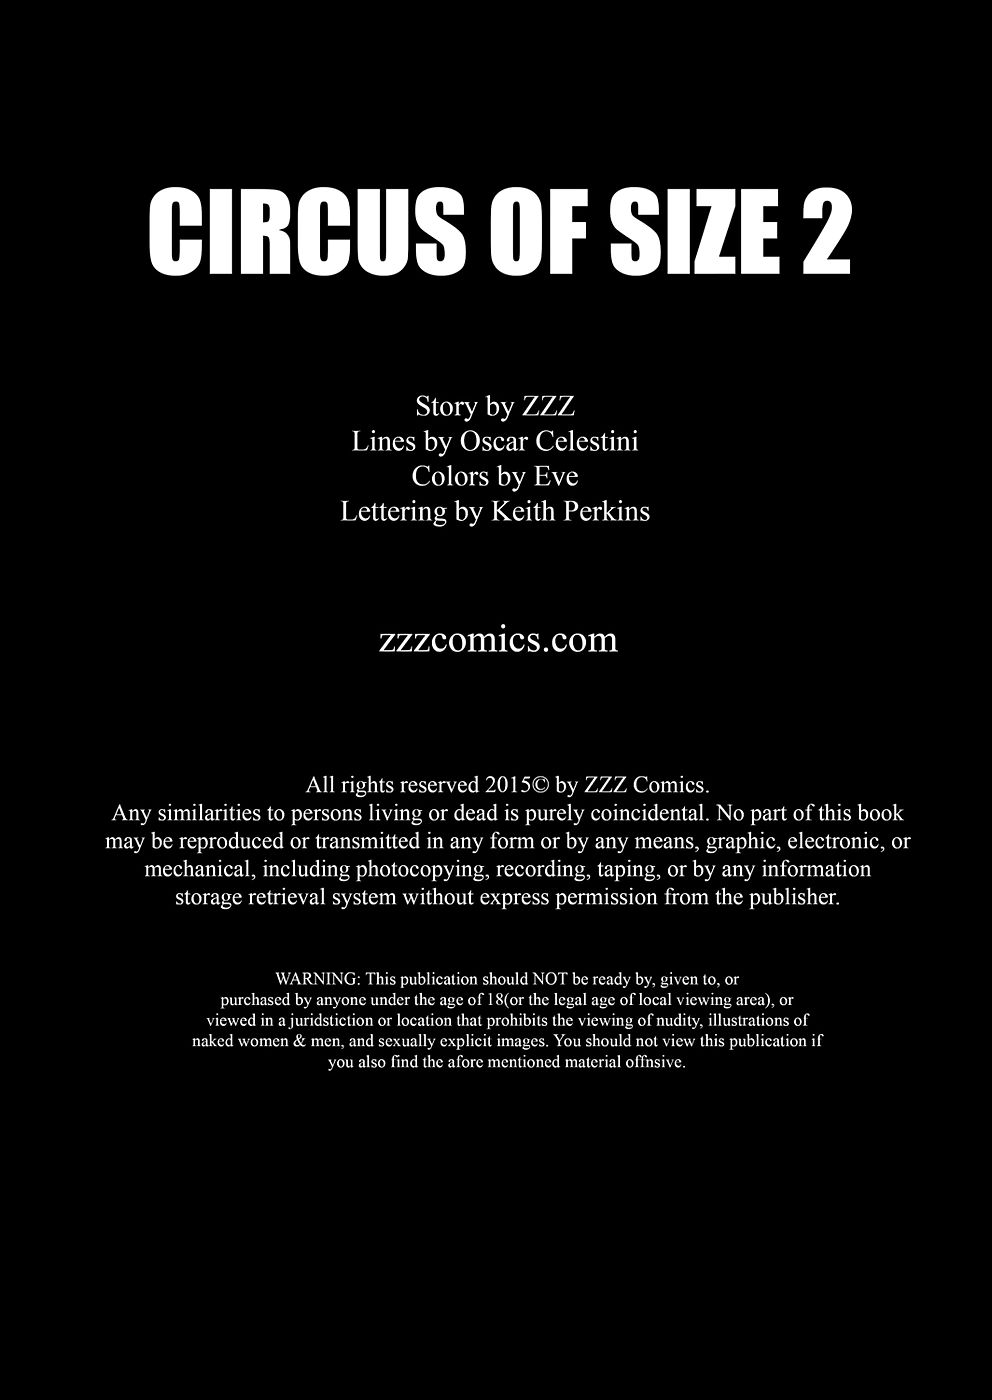 zzz cirque de Taille 2 page 1